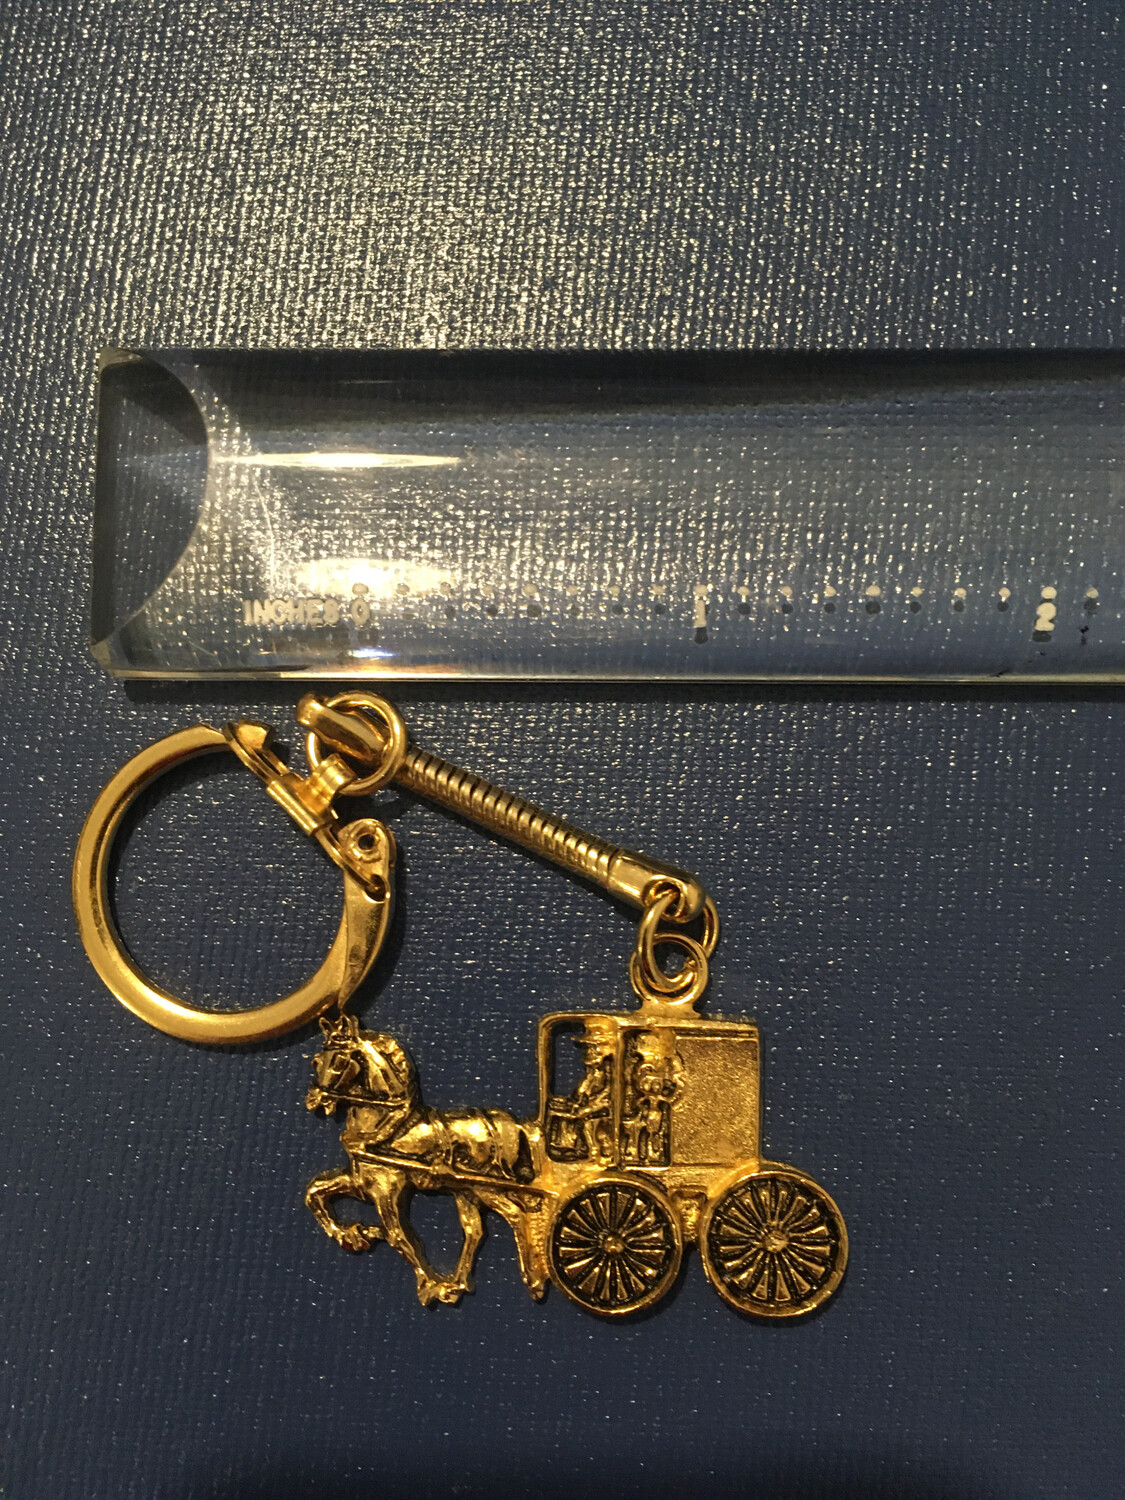 Amish Key Chain